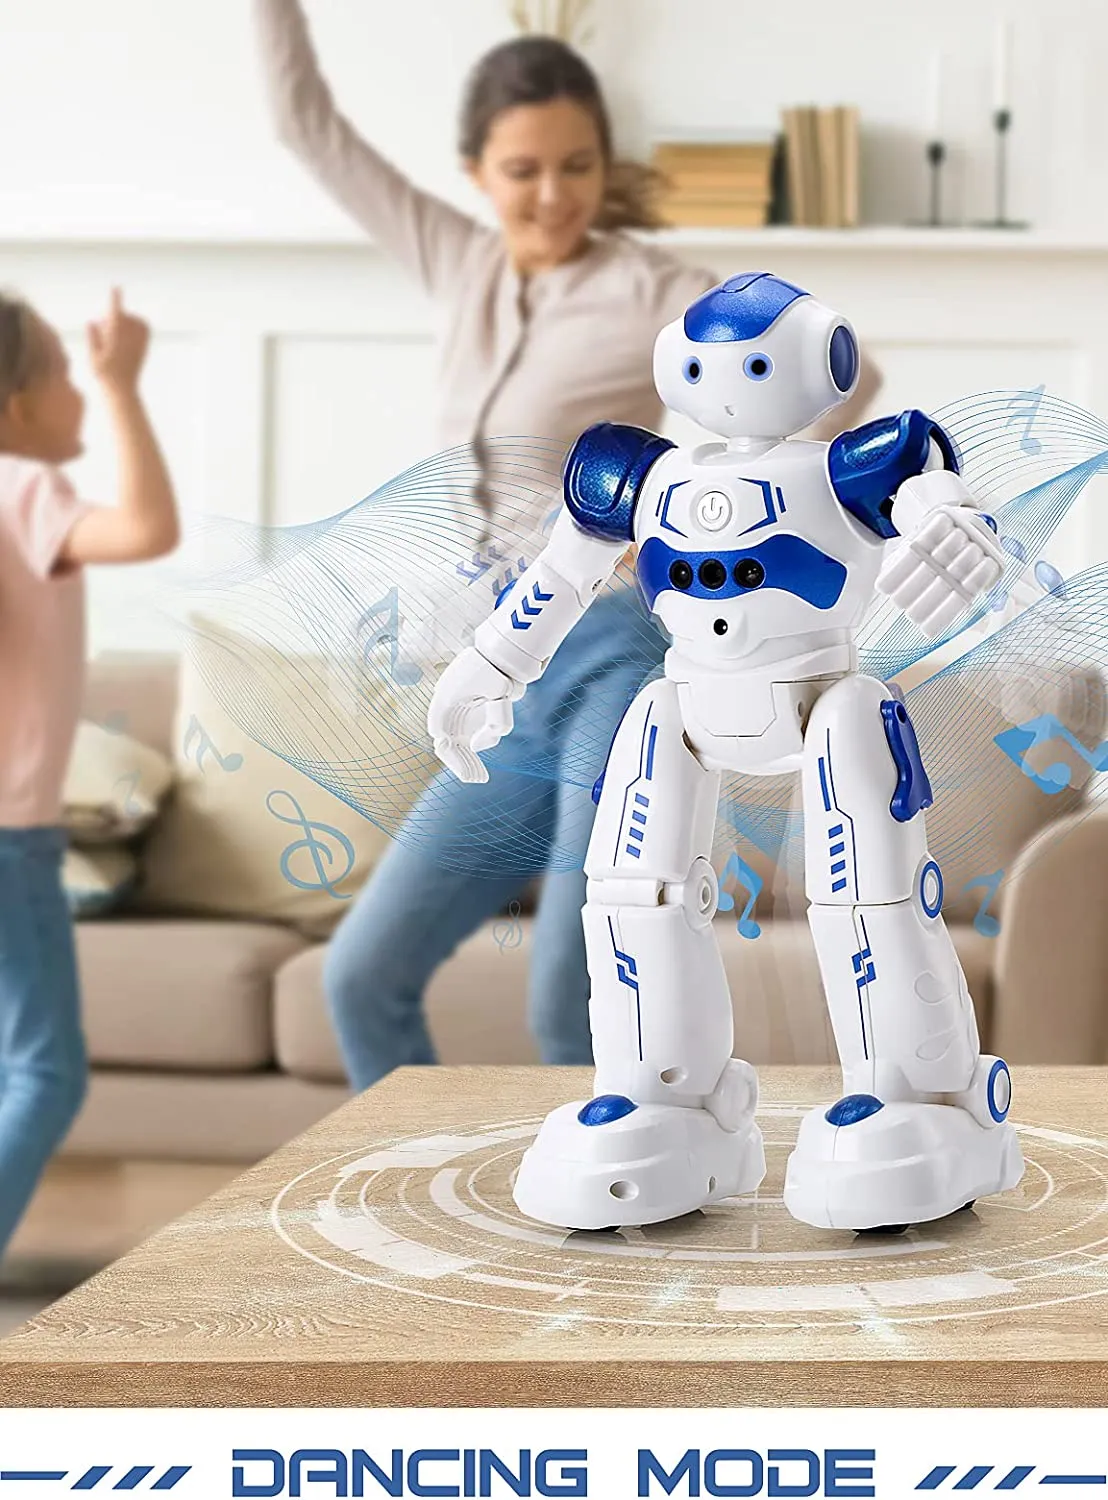 Robot télécommandé intelligent - danse/chant/geste détection 3 ans et plus